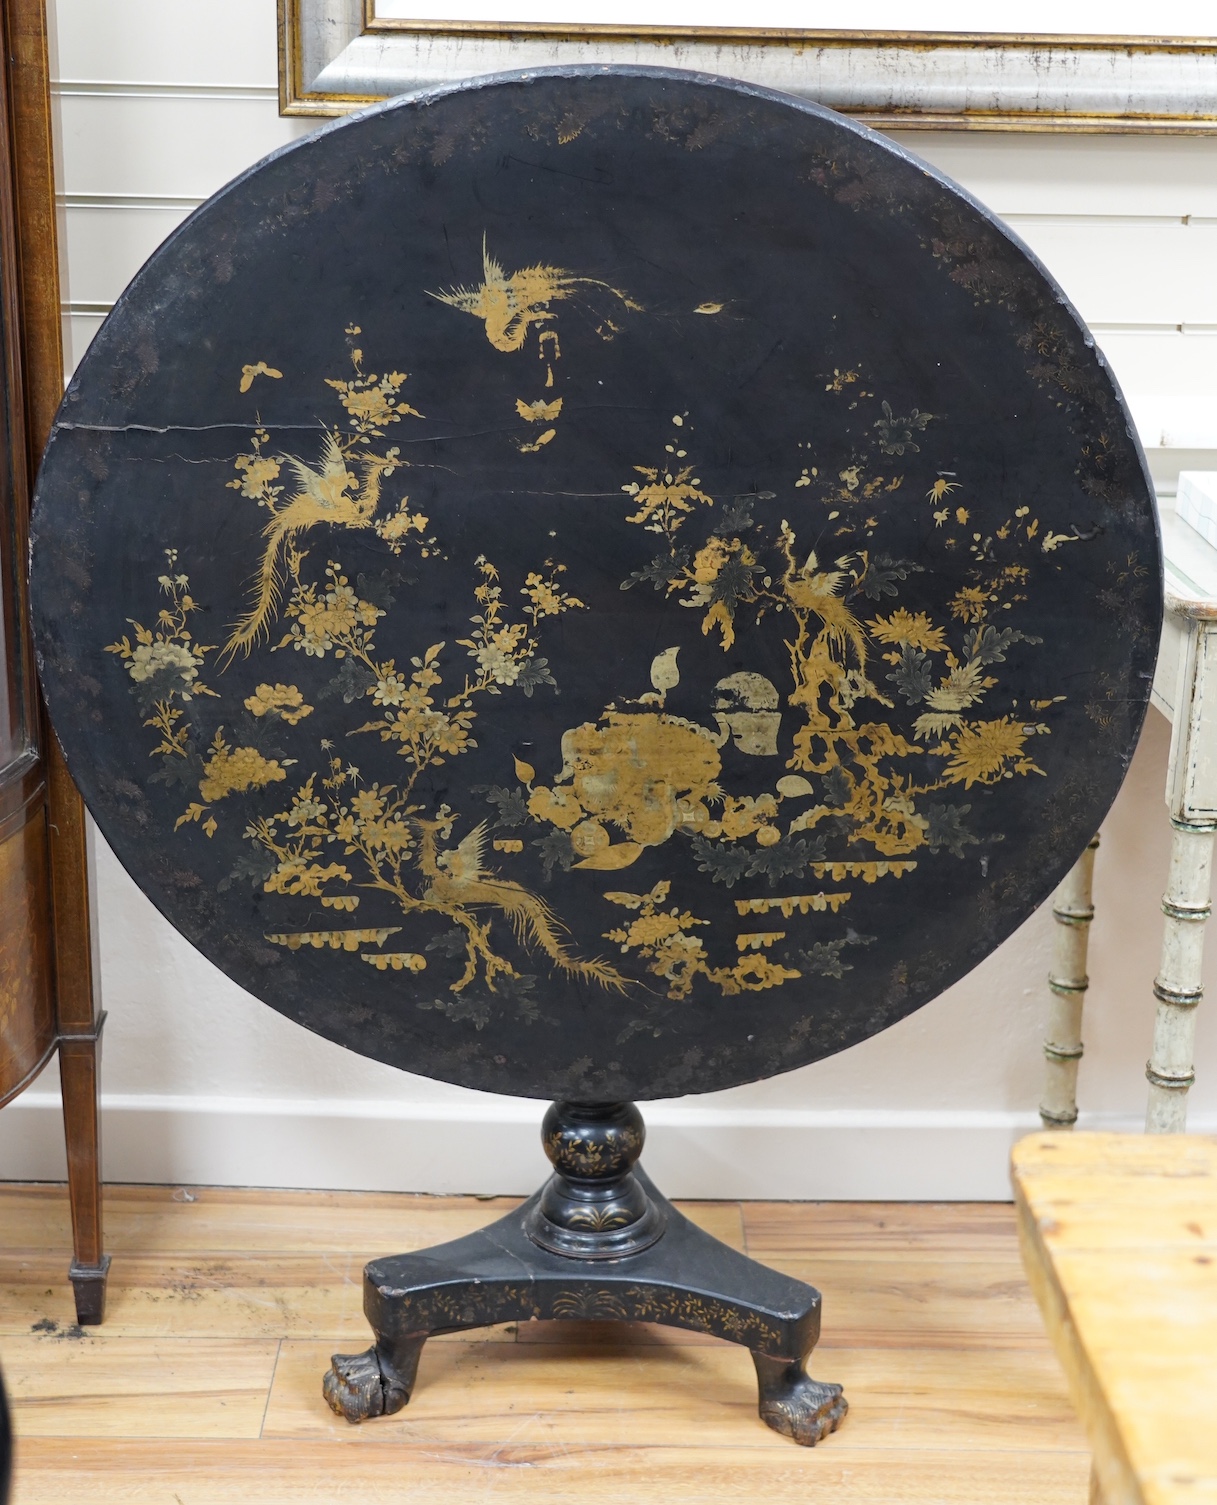 A Chinese export lacquer circular tilt top tea table, diameter 91cm, height 70cm. Condition - fair